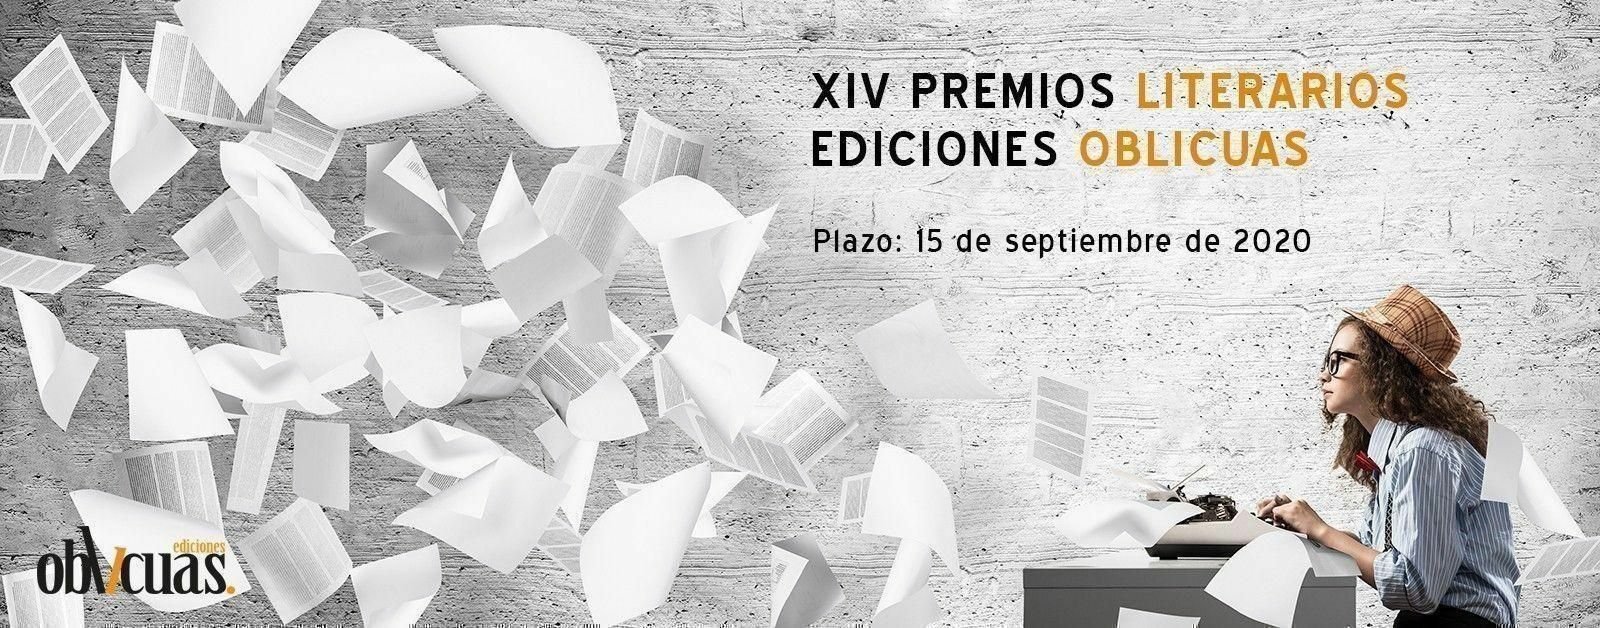 XIV PREMIOS LITERARIOS EDICIONES OBLICUAS 2020